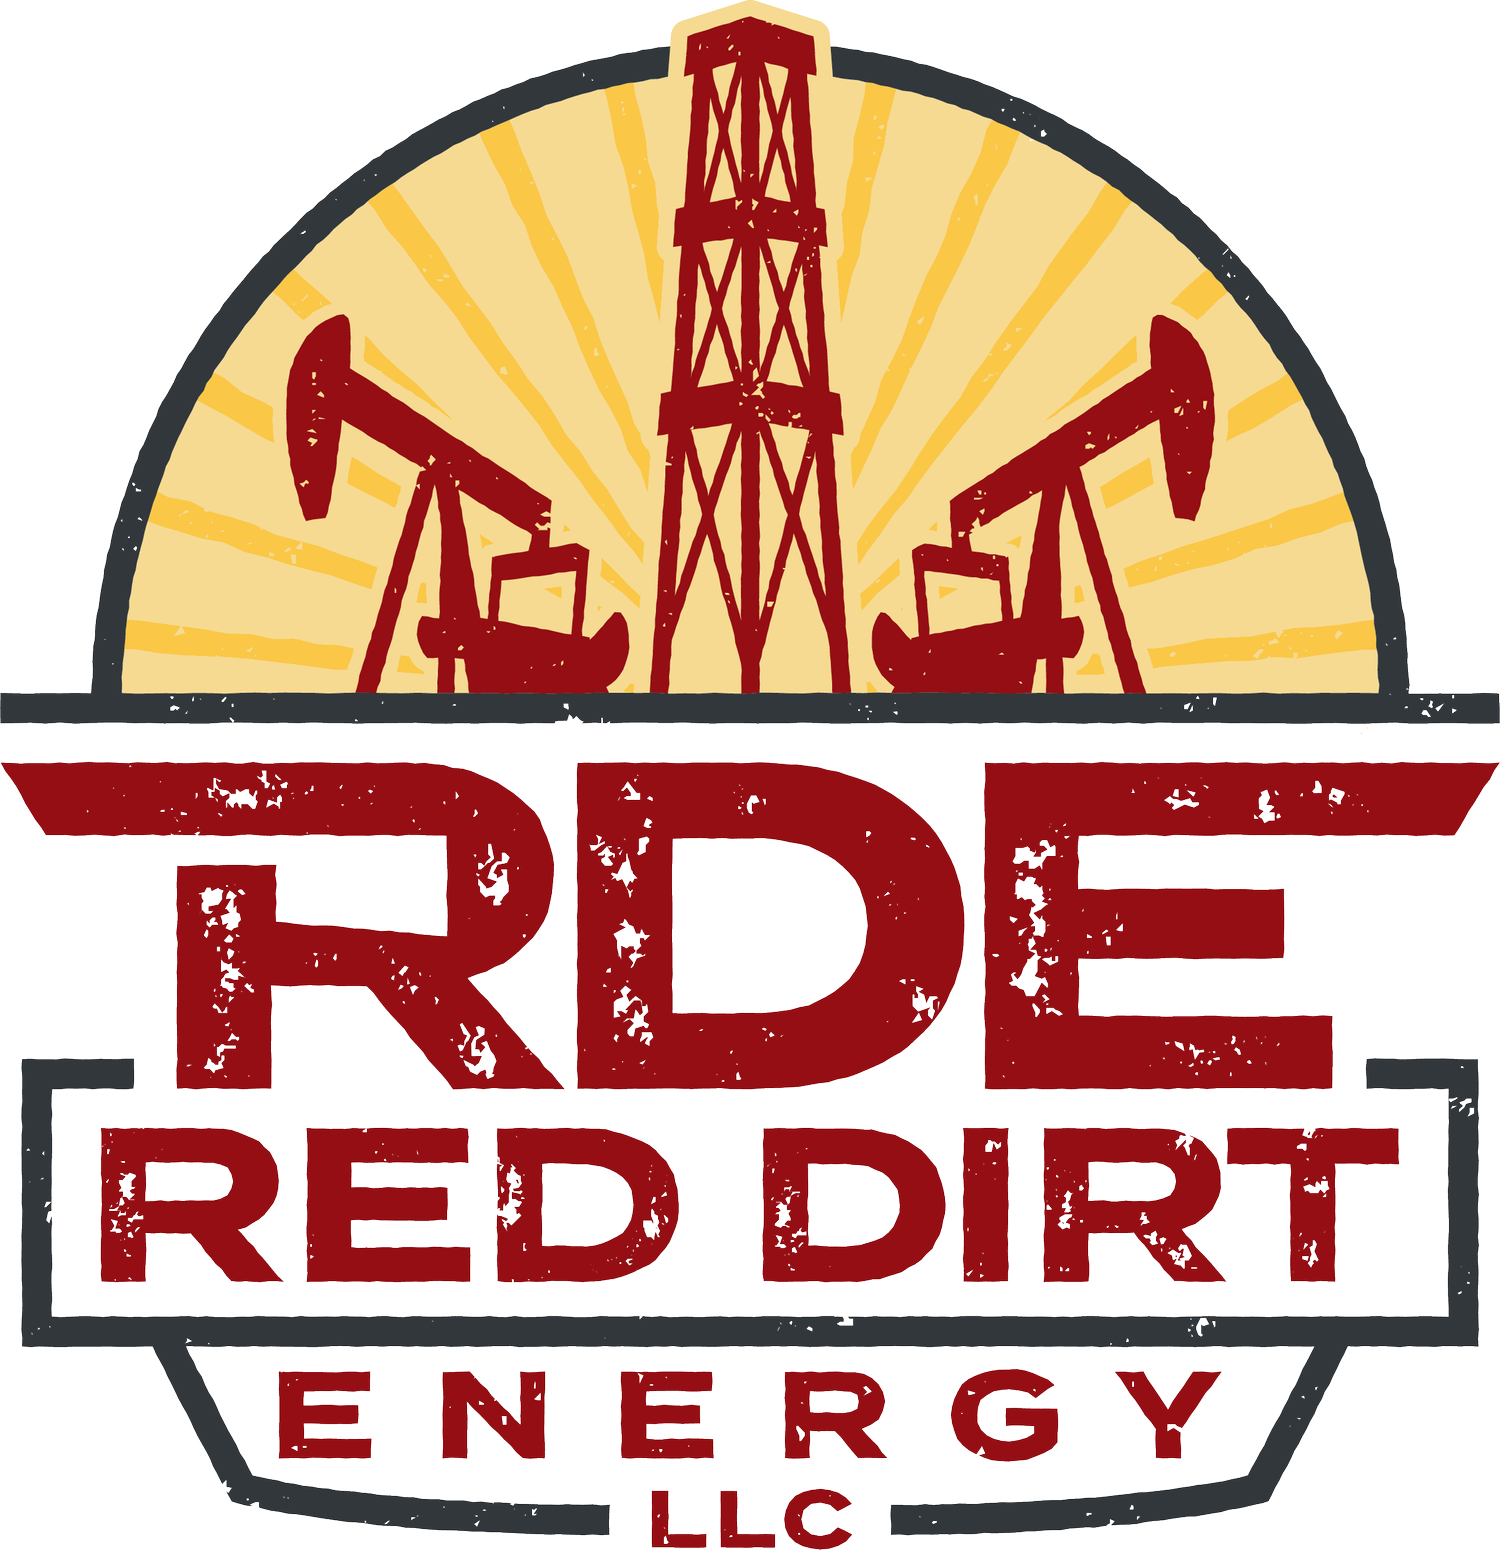 Red Dirt Energy, LLC